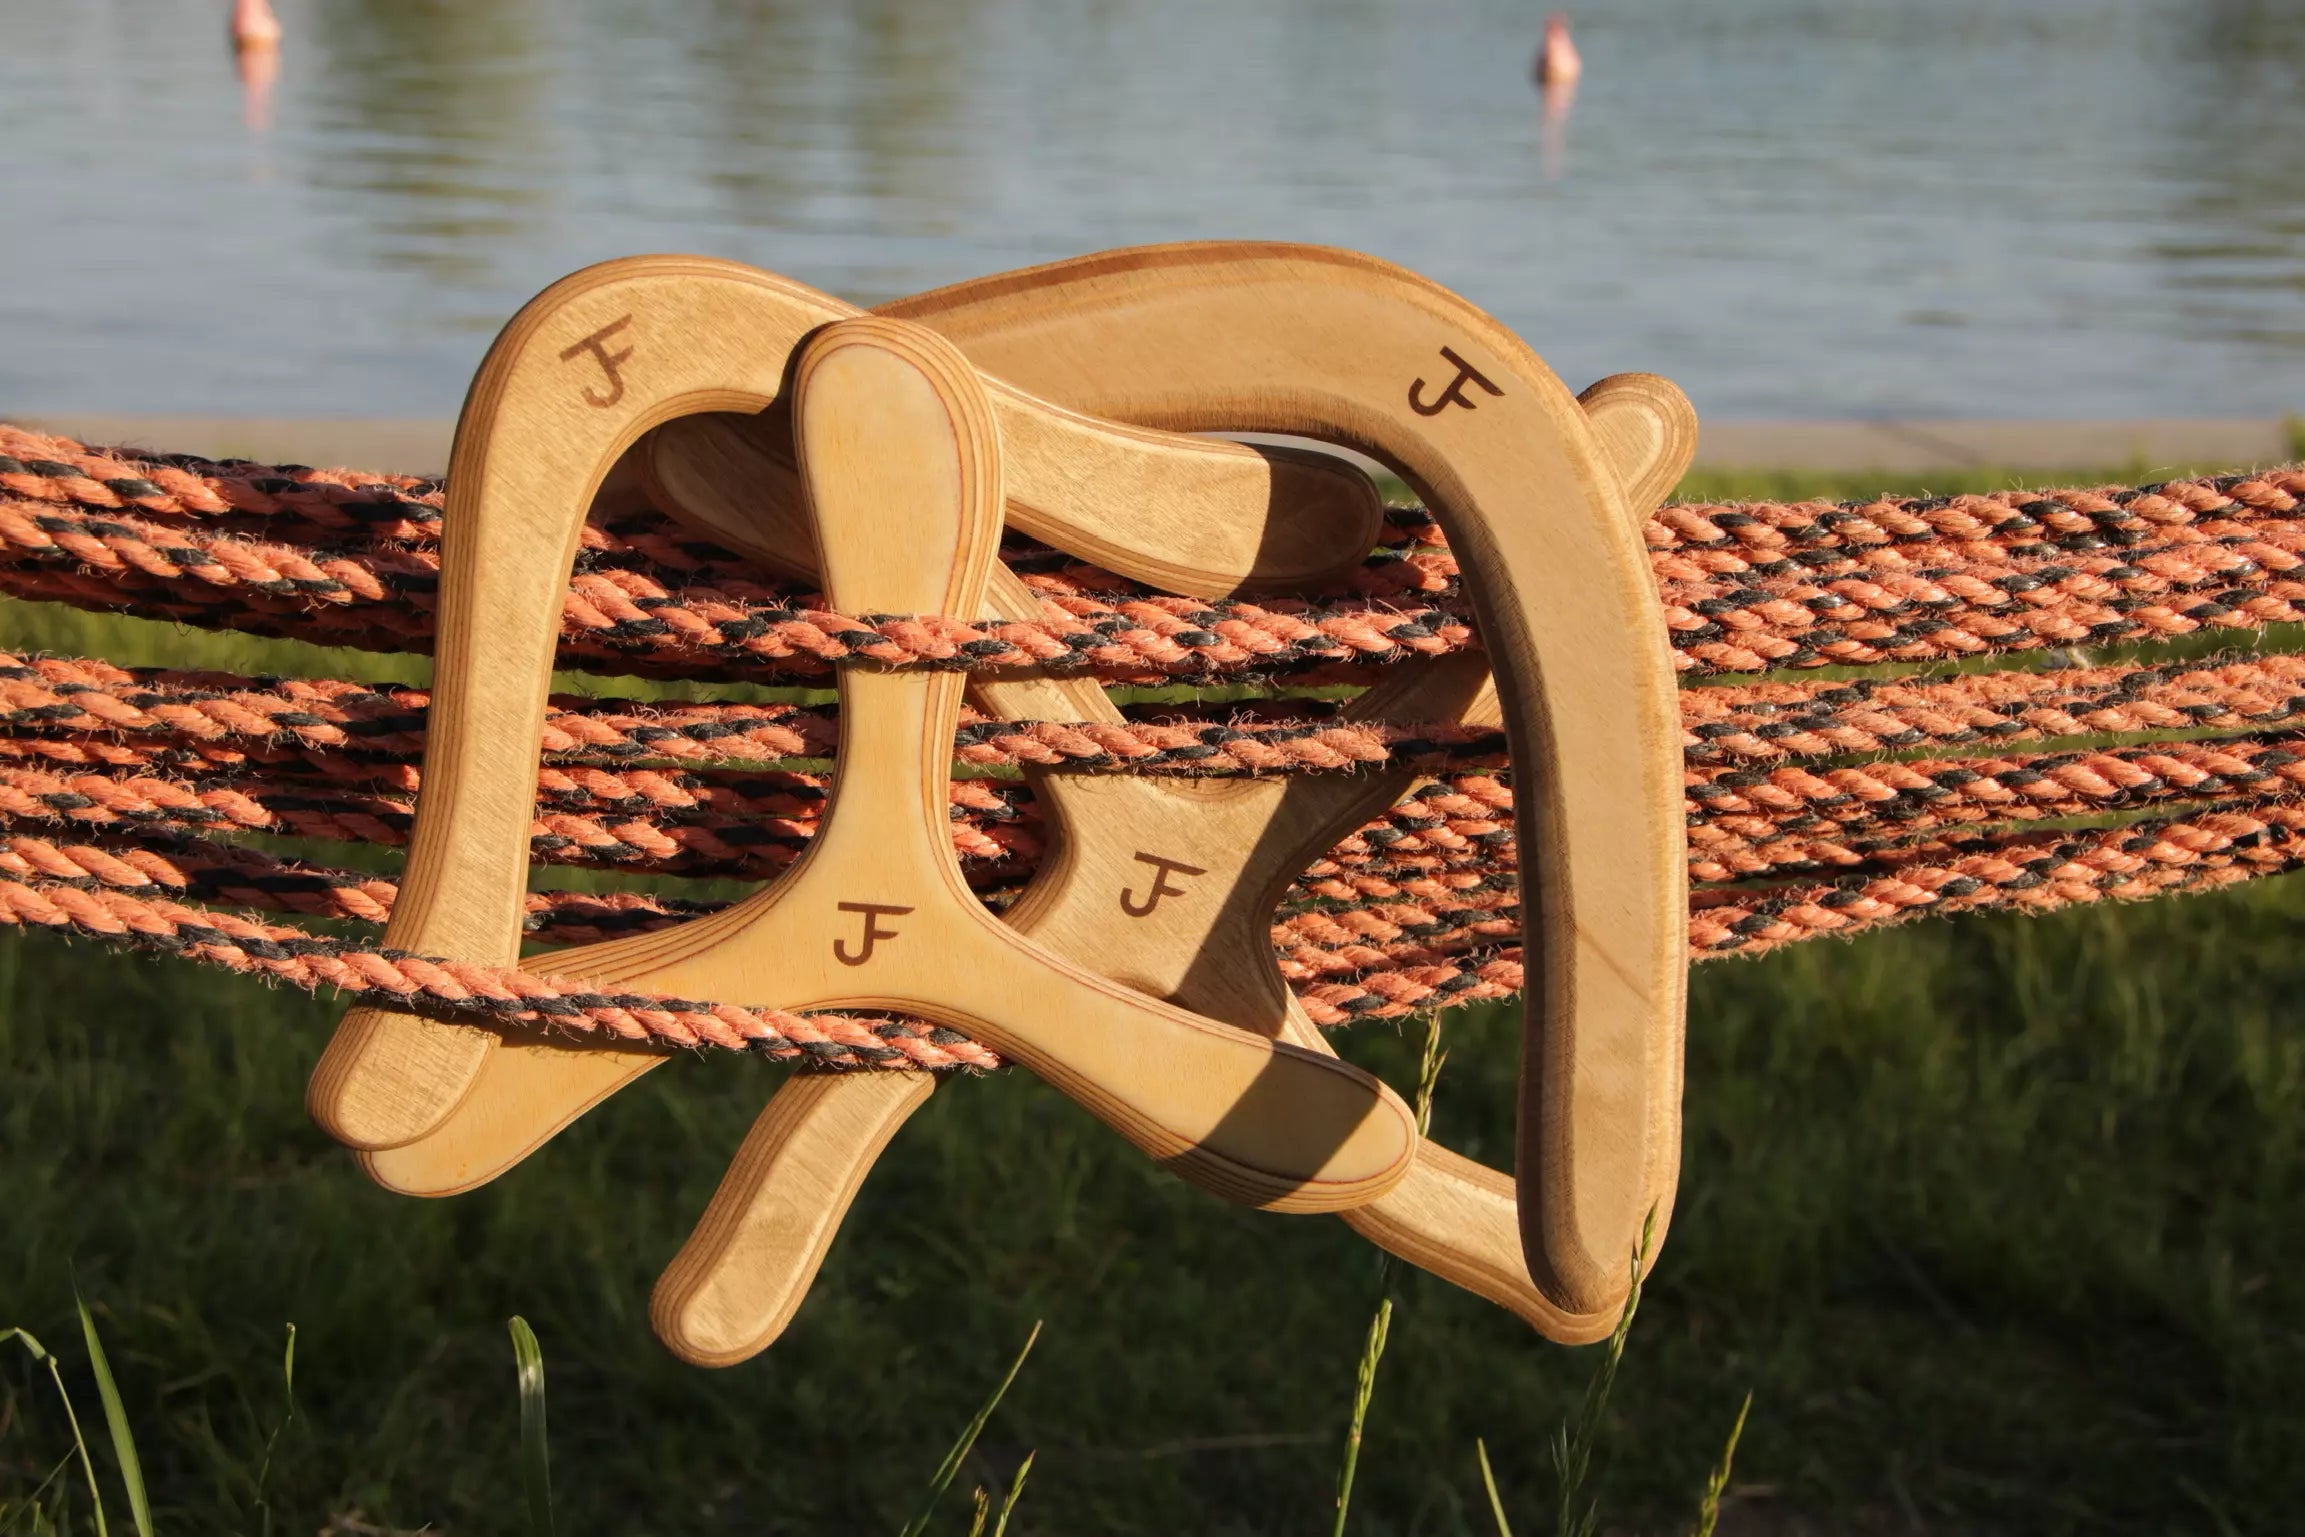 JF Bumerang - Unsere vier Boomerange zusammen auf einem Bild